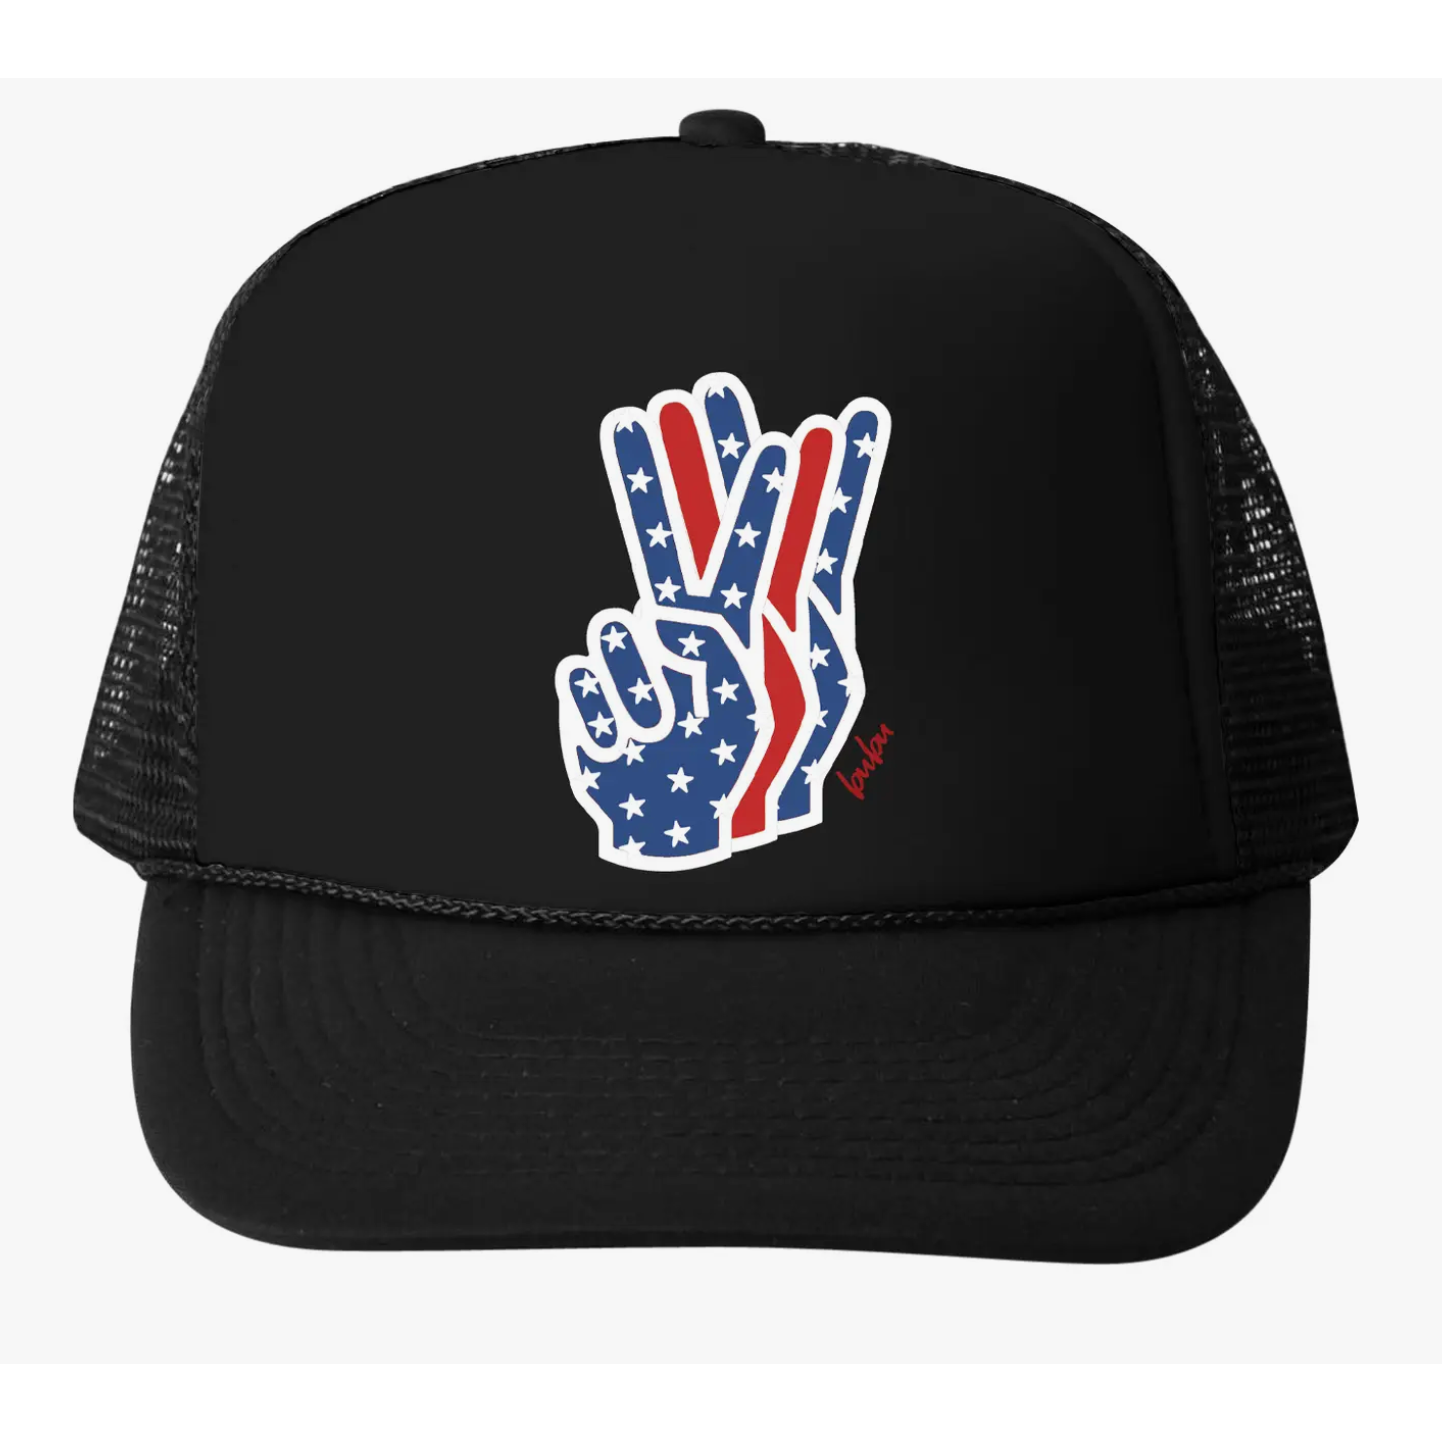 july 4th peace trucker hat in black